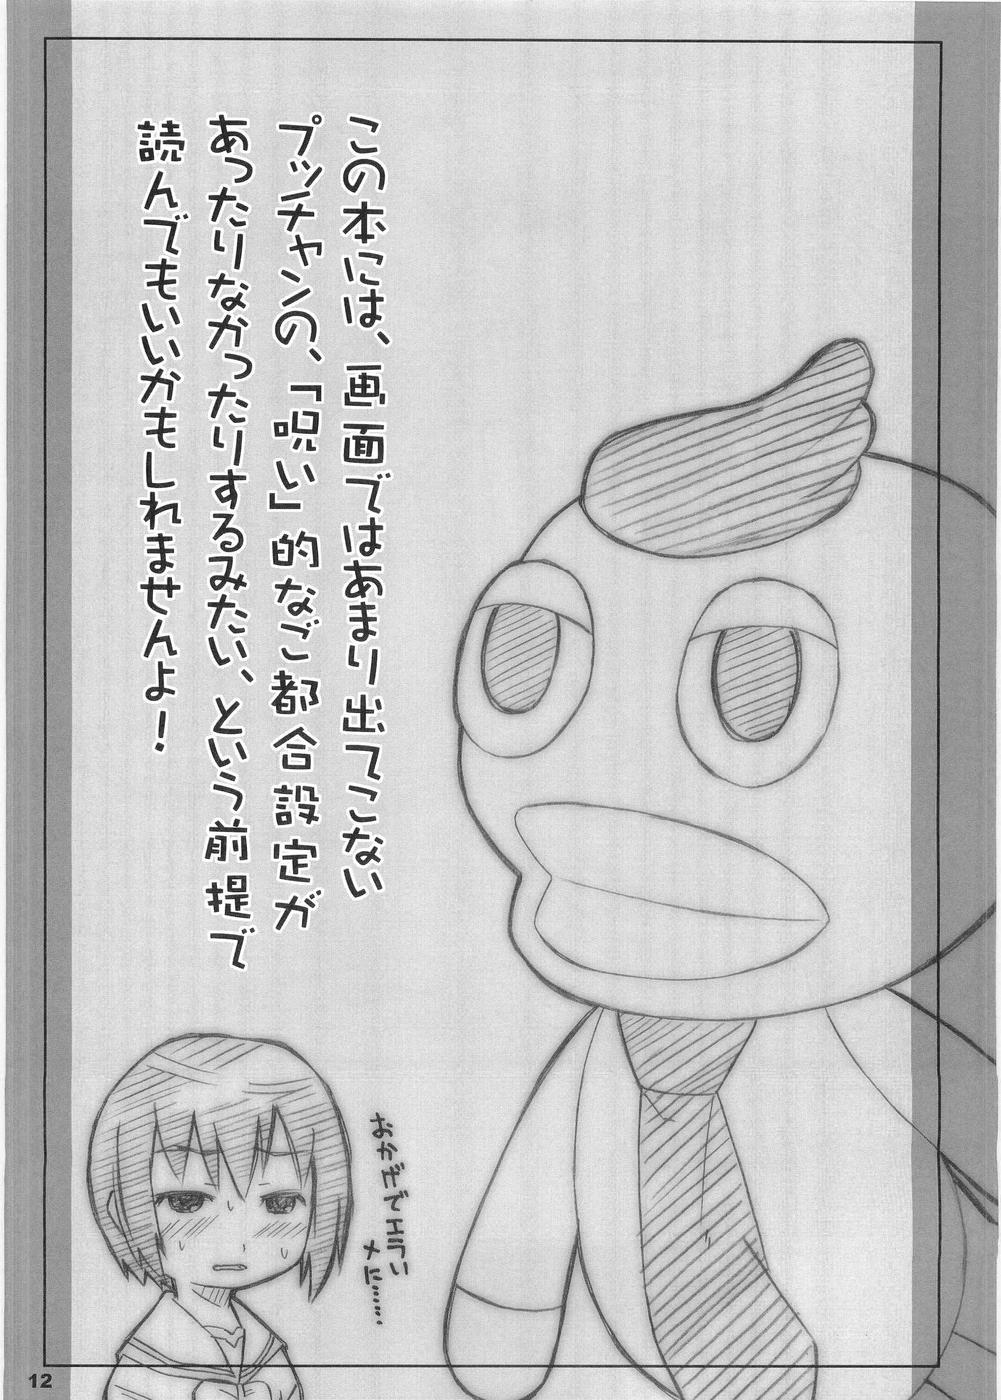 Menage payappayappaaaaa - Gokujou seitokai Spreading - Page 10